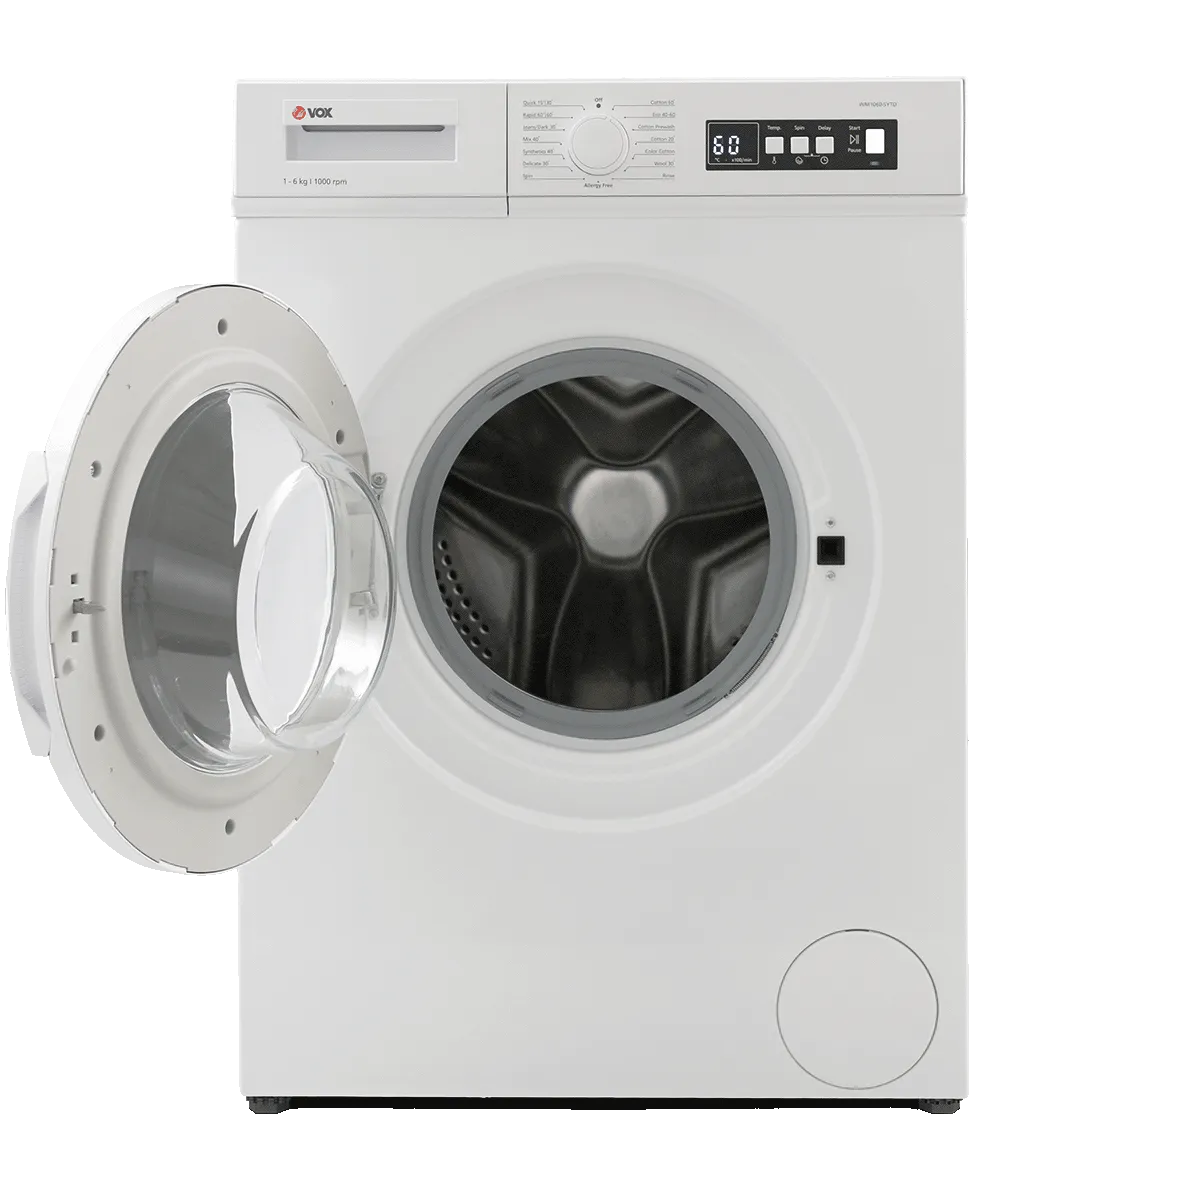 Машина за перење алишта WM1060-SYTD 